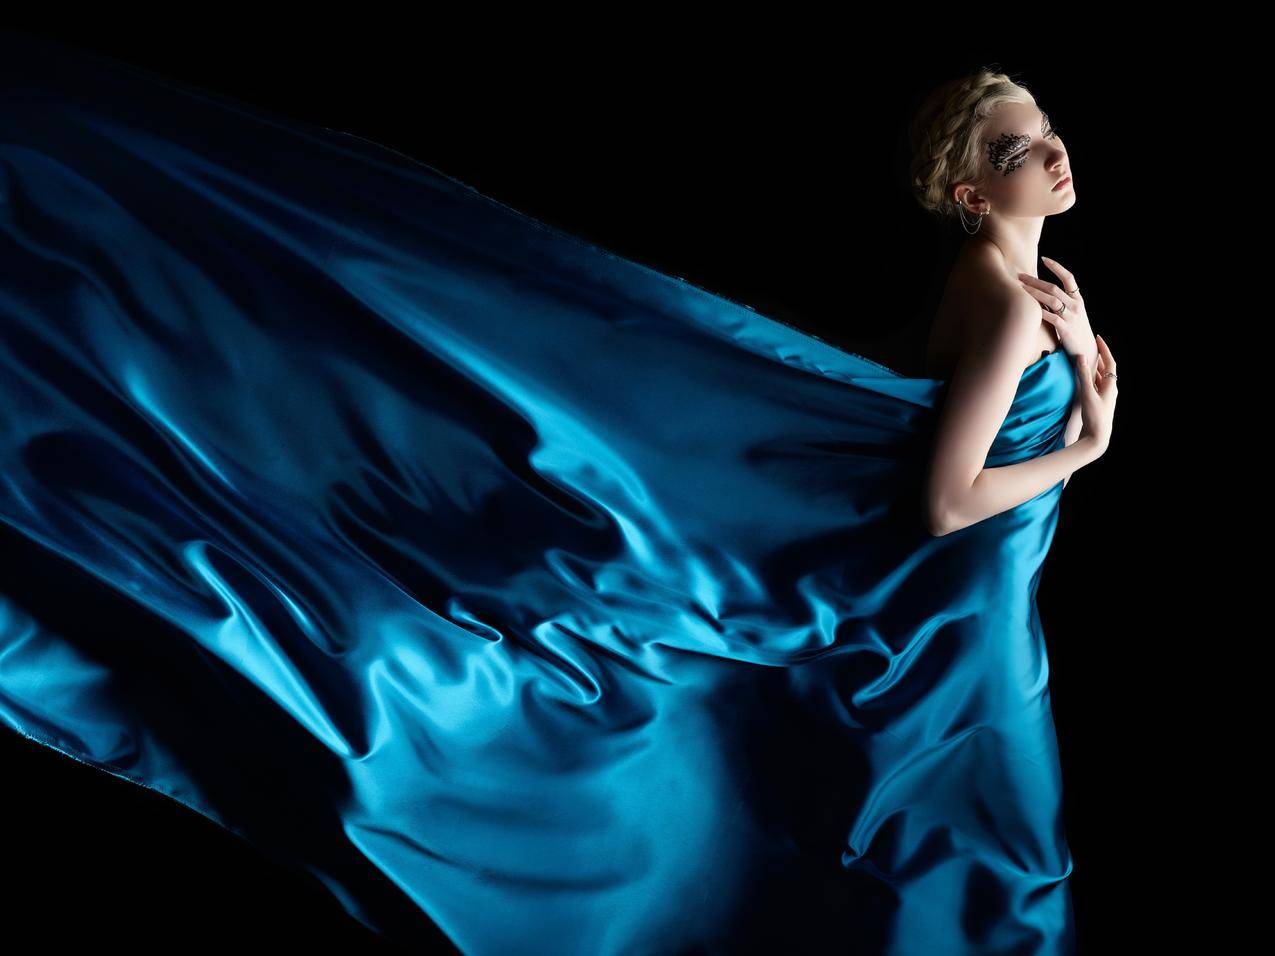 天使的魅力,自由,伤心,皮肤,蓝色礼服,6K美女图片